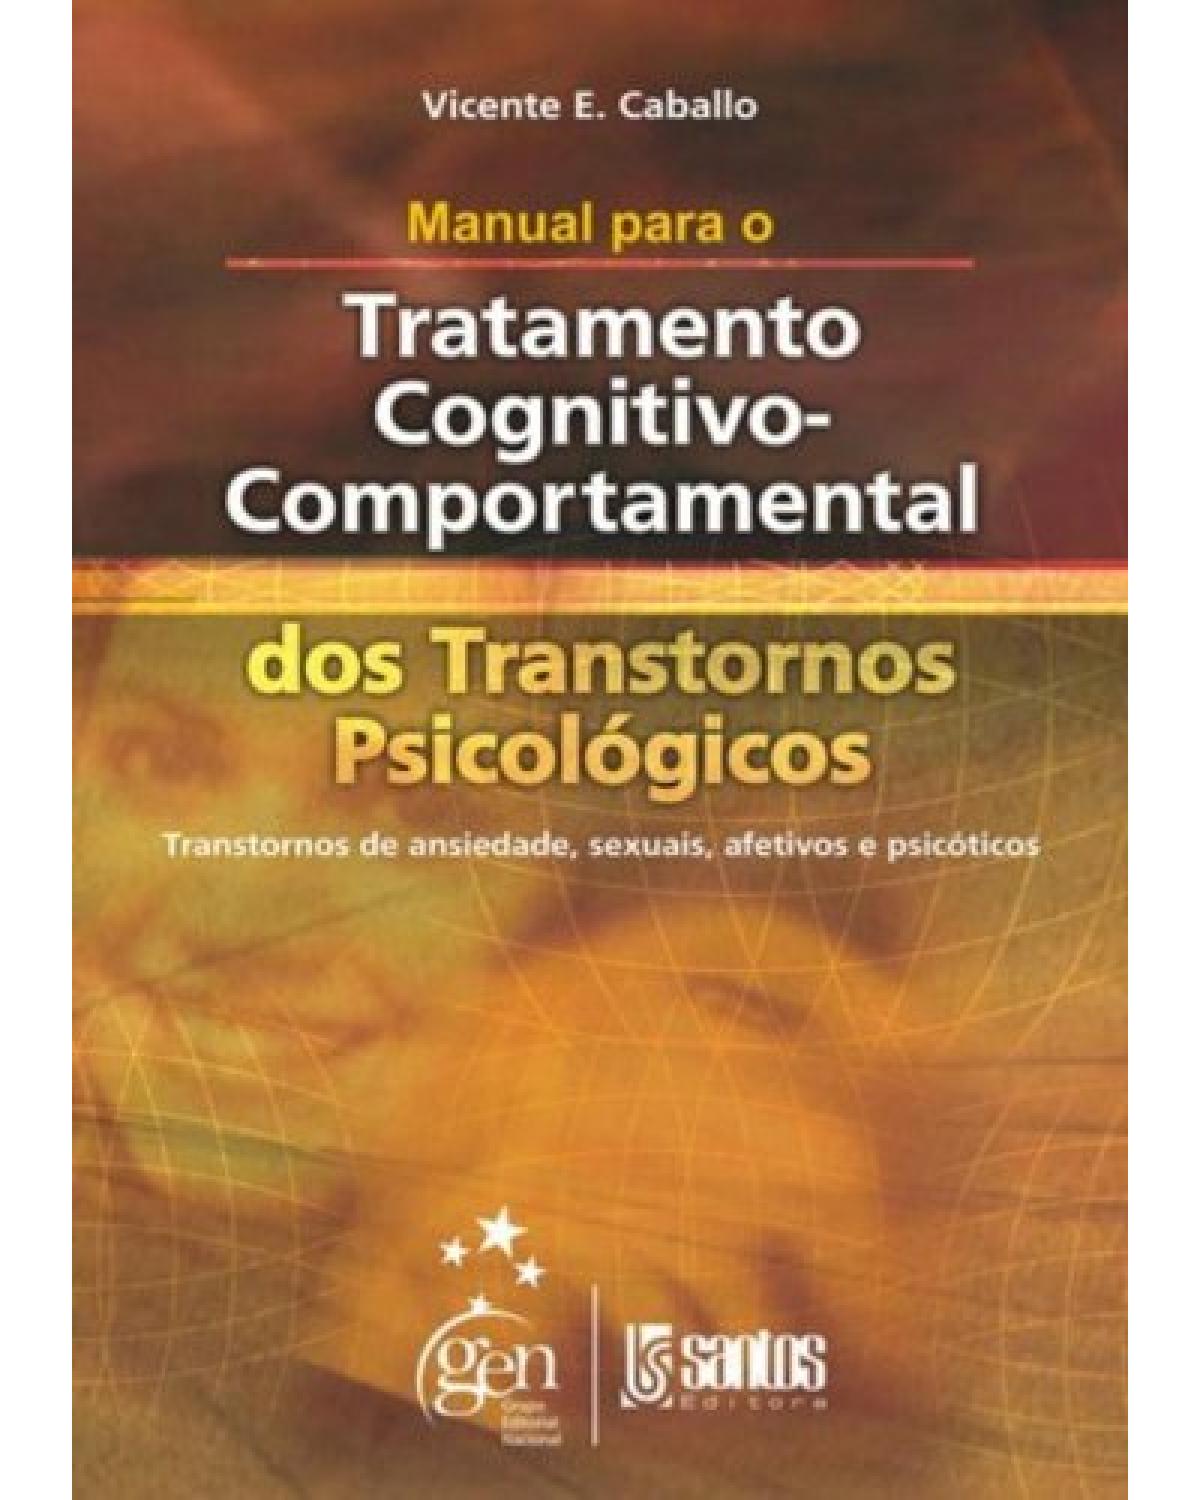 Manual para o tratamento cognitivo-comportamental dos transtornos psicológicos - Transtornos de ansiedade, sexuais, afetivos e psicóticos - 1ª Edição | 2003